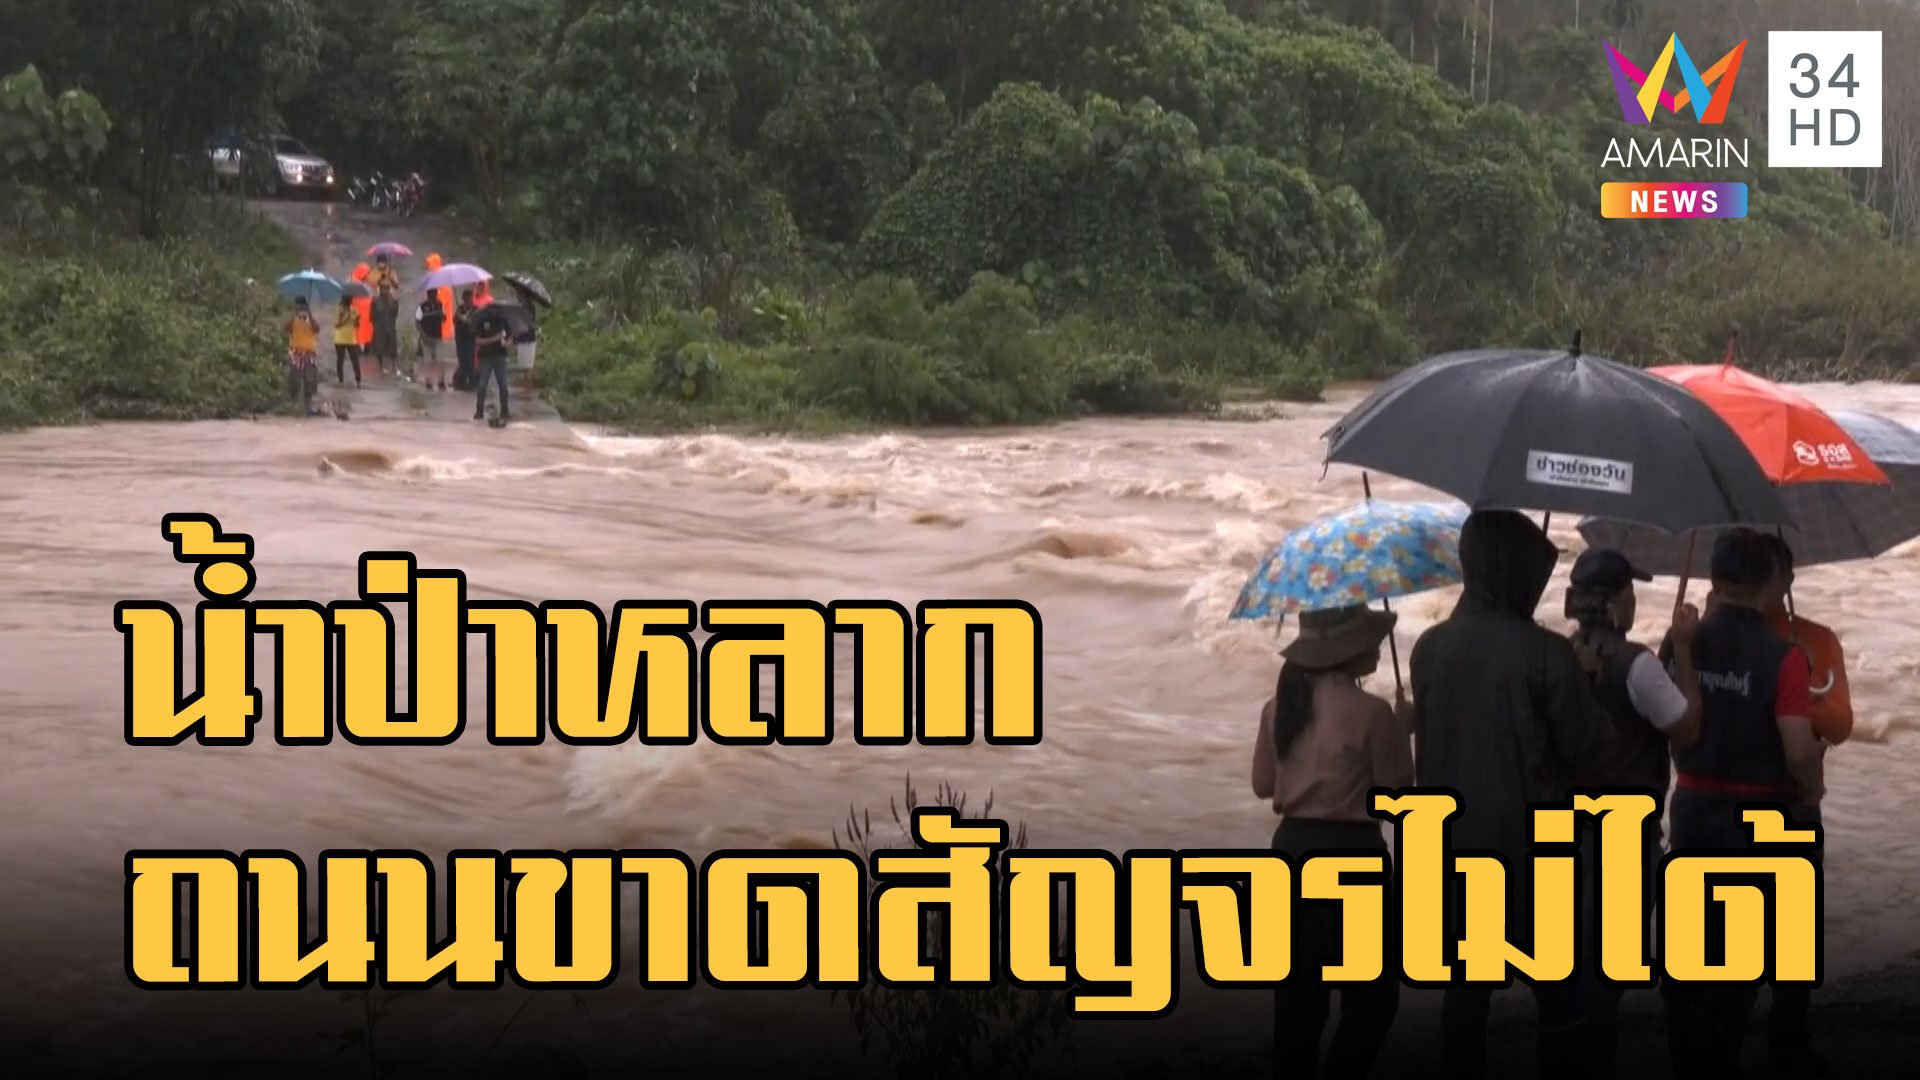 ฝนถล่มใต้ น้ำป่าหลาก ทำถนนขาดสัญจรไม่ได้ | ข่าวอรุณอมรินทร์ | 5 ธ.ค. 65 | AMARIN TVHD34